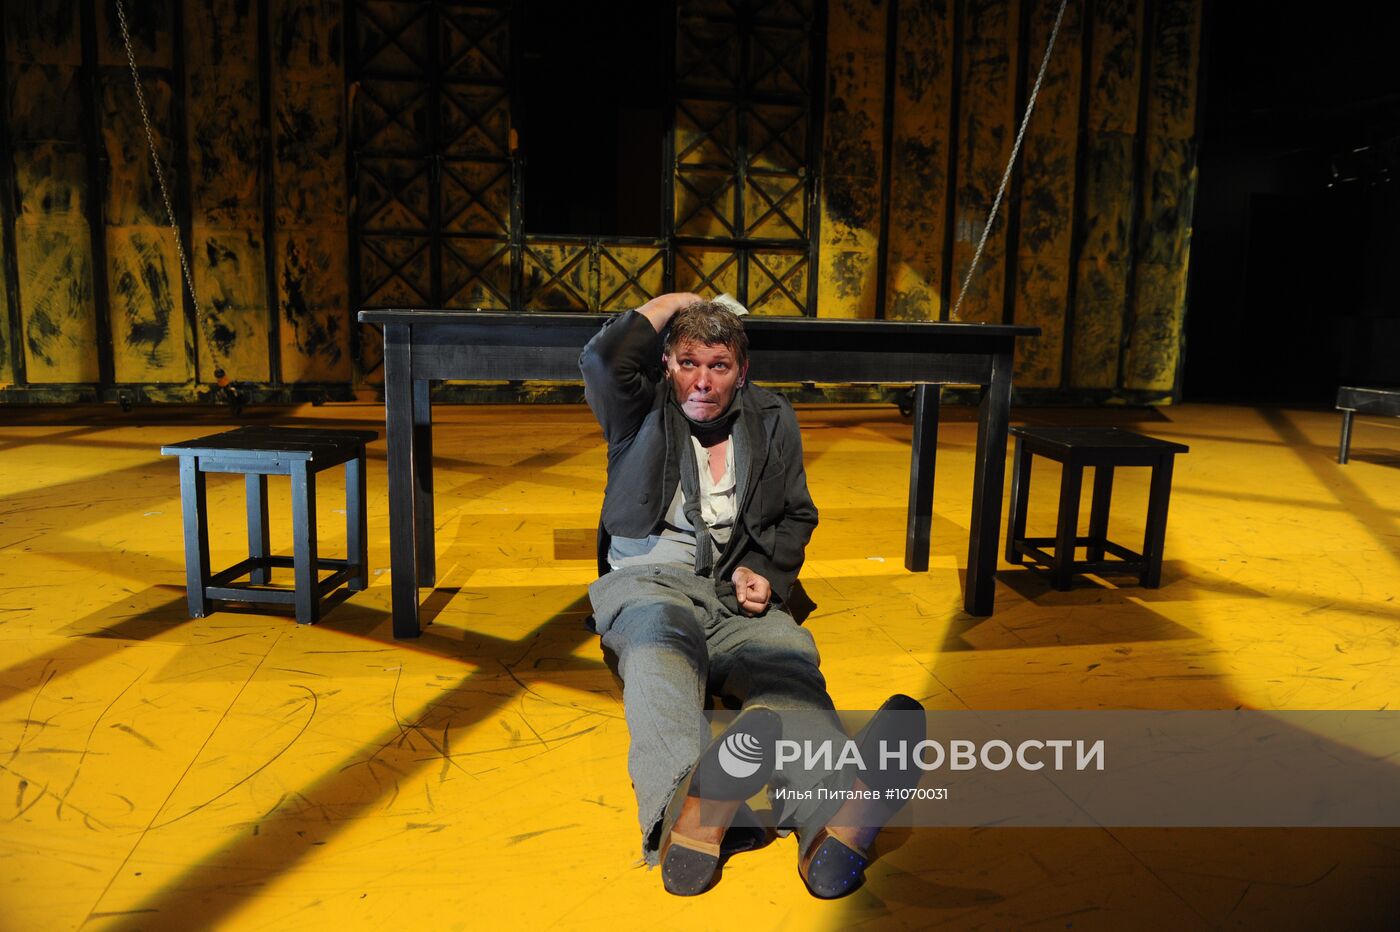 Пресс-показ спектакля "Преступление и наказание" в МХТ им. Чехов